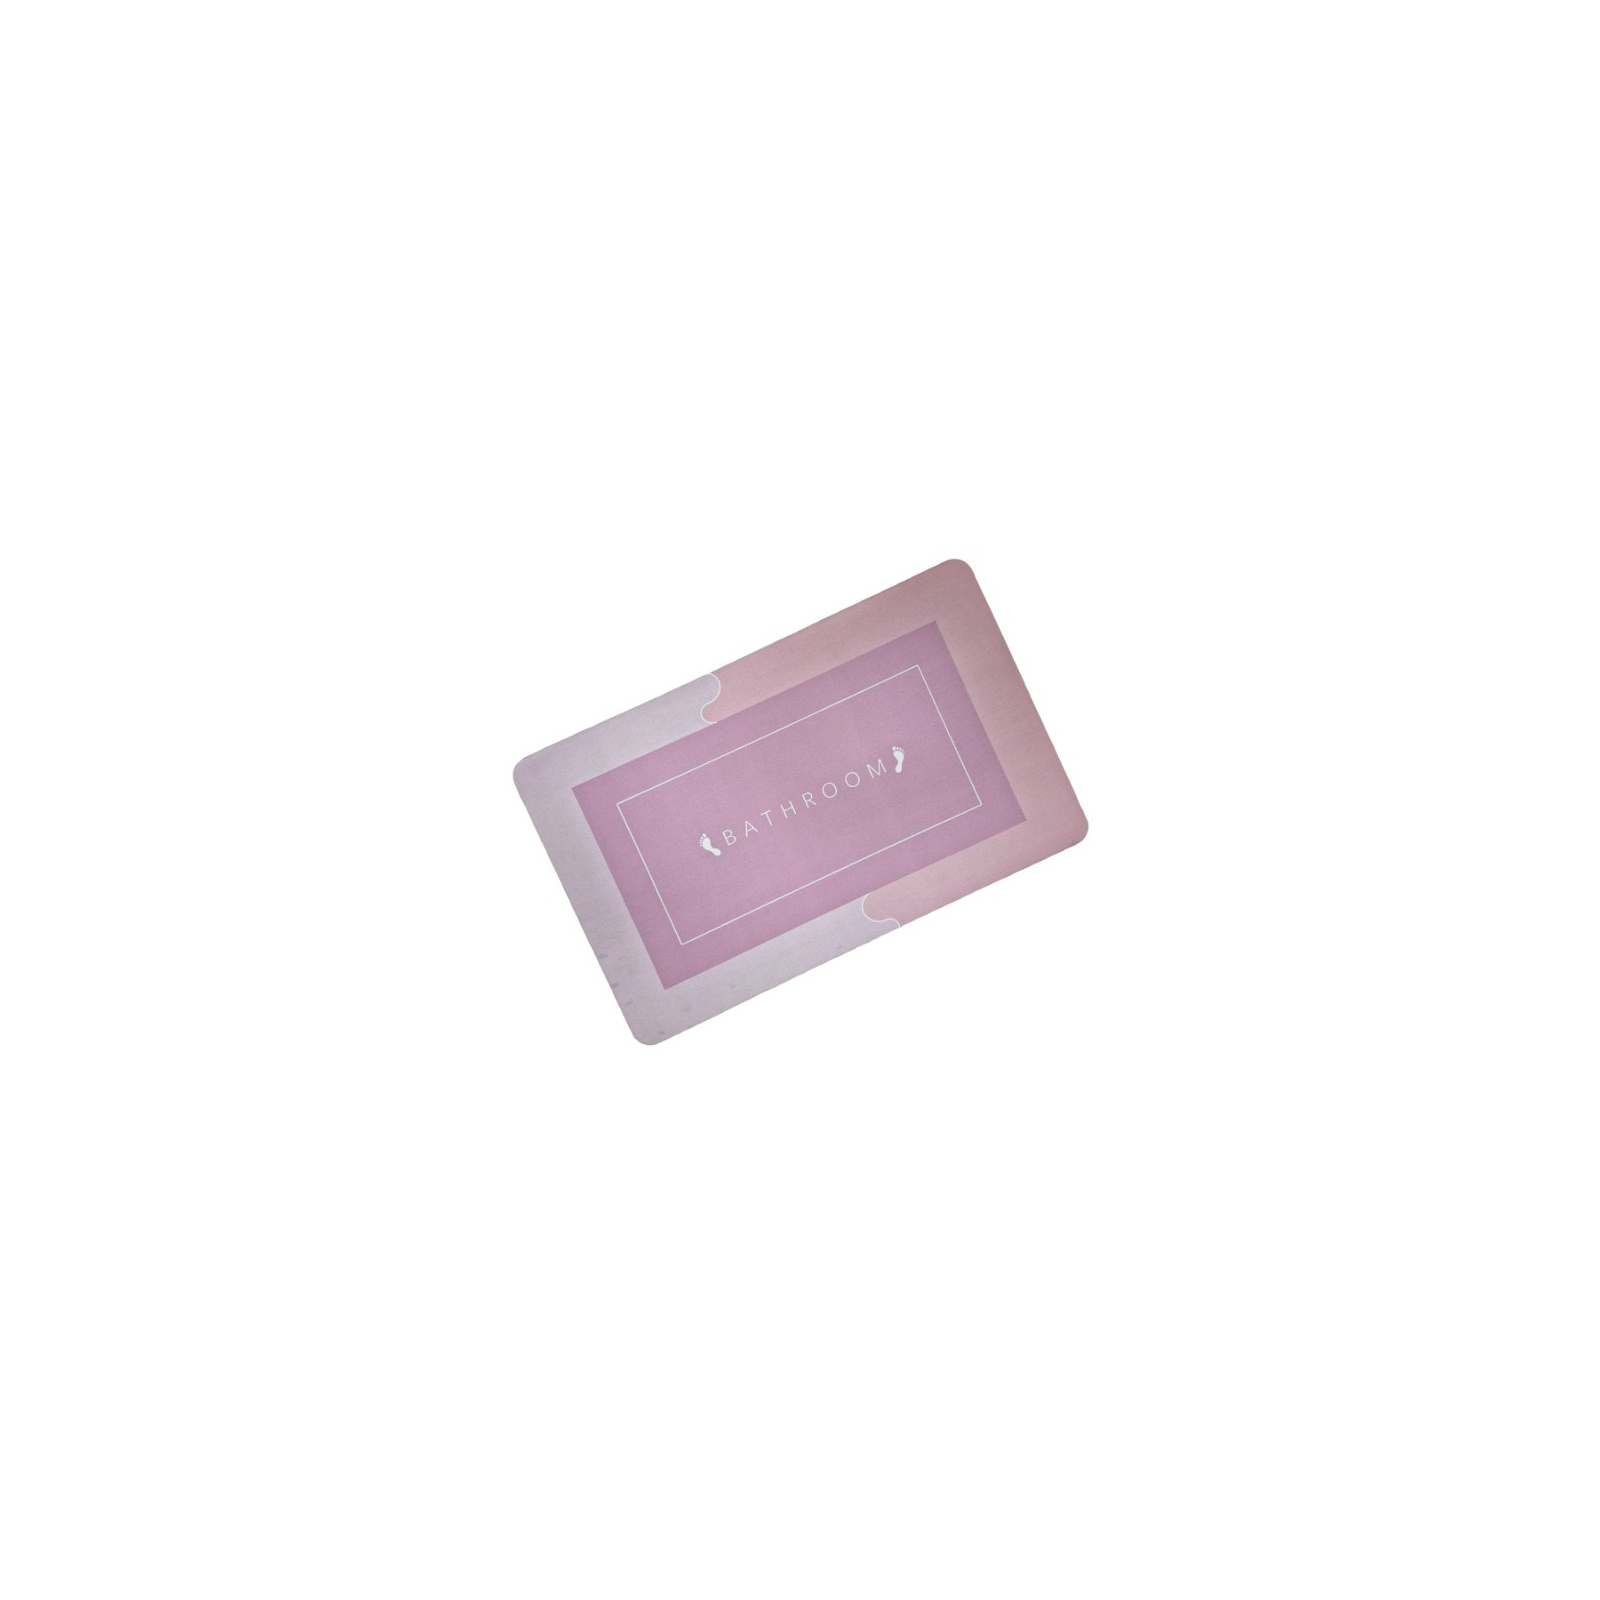 Коврик для ванной Stenson суперпоглощающий 50 х 80 см прямоугольный светло-розовый (R30938 l.pink)